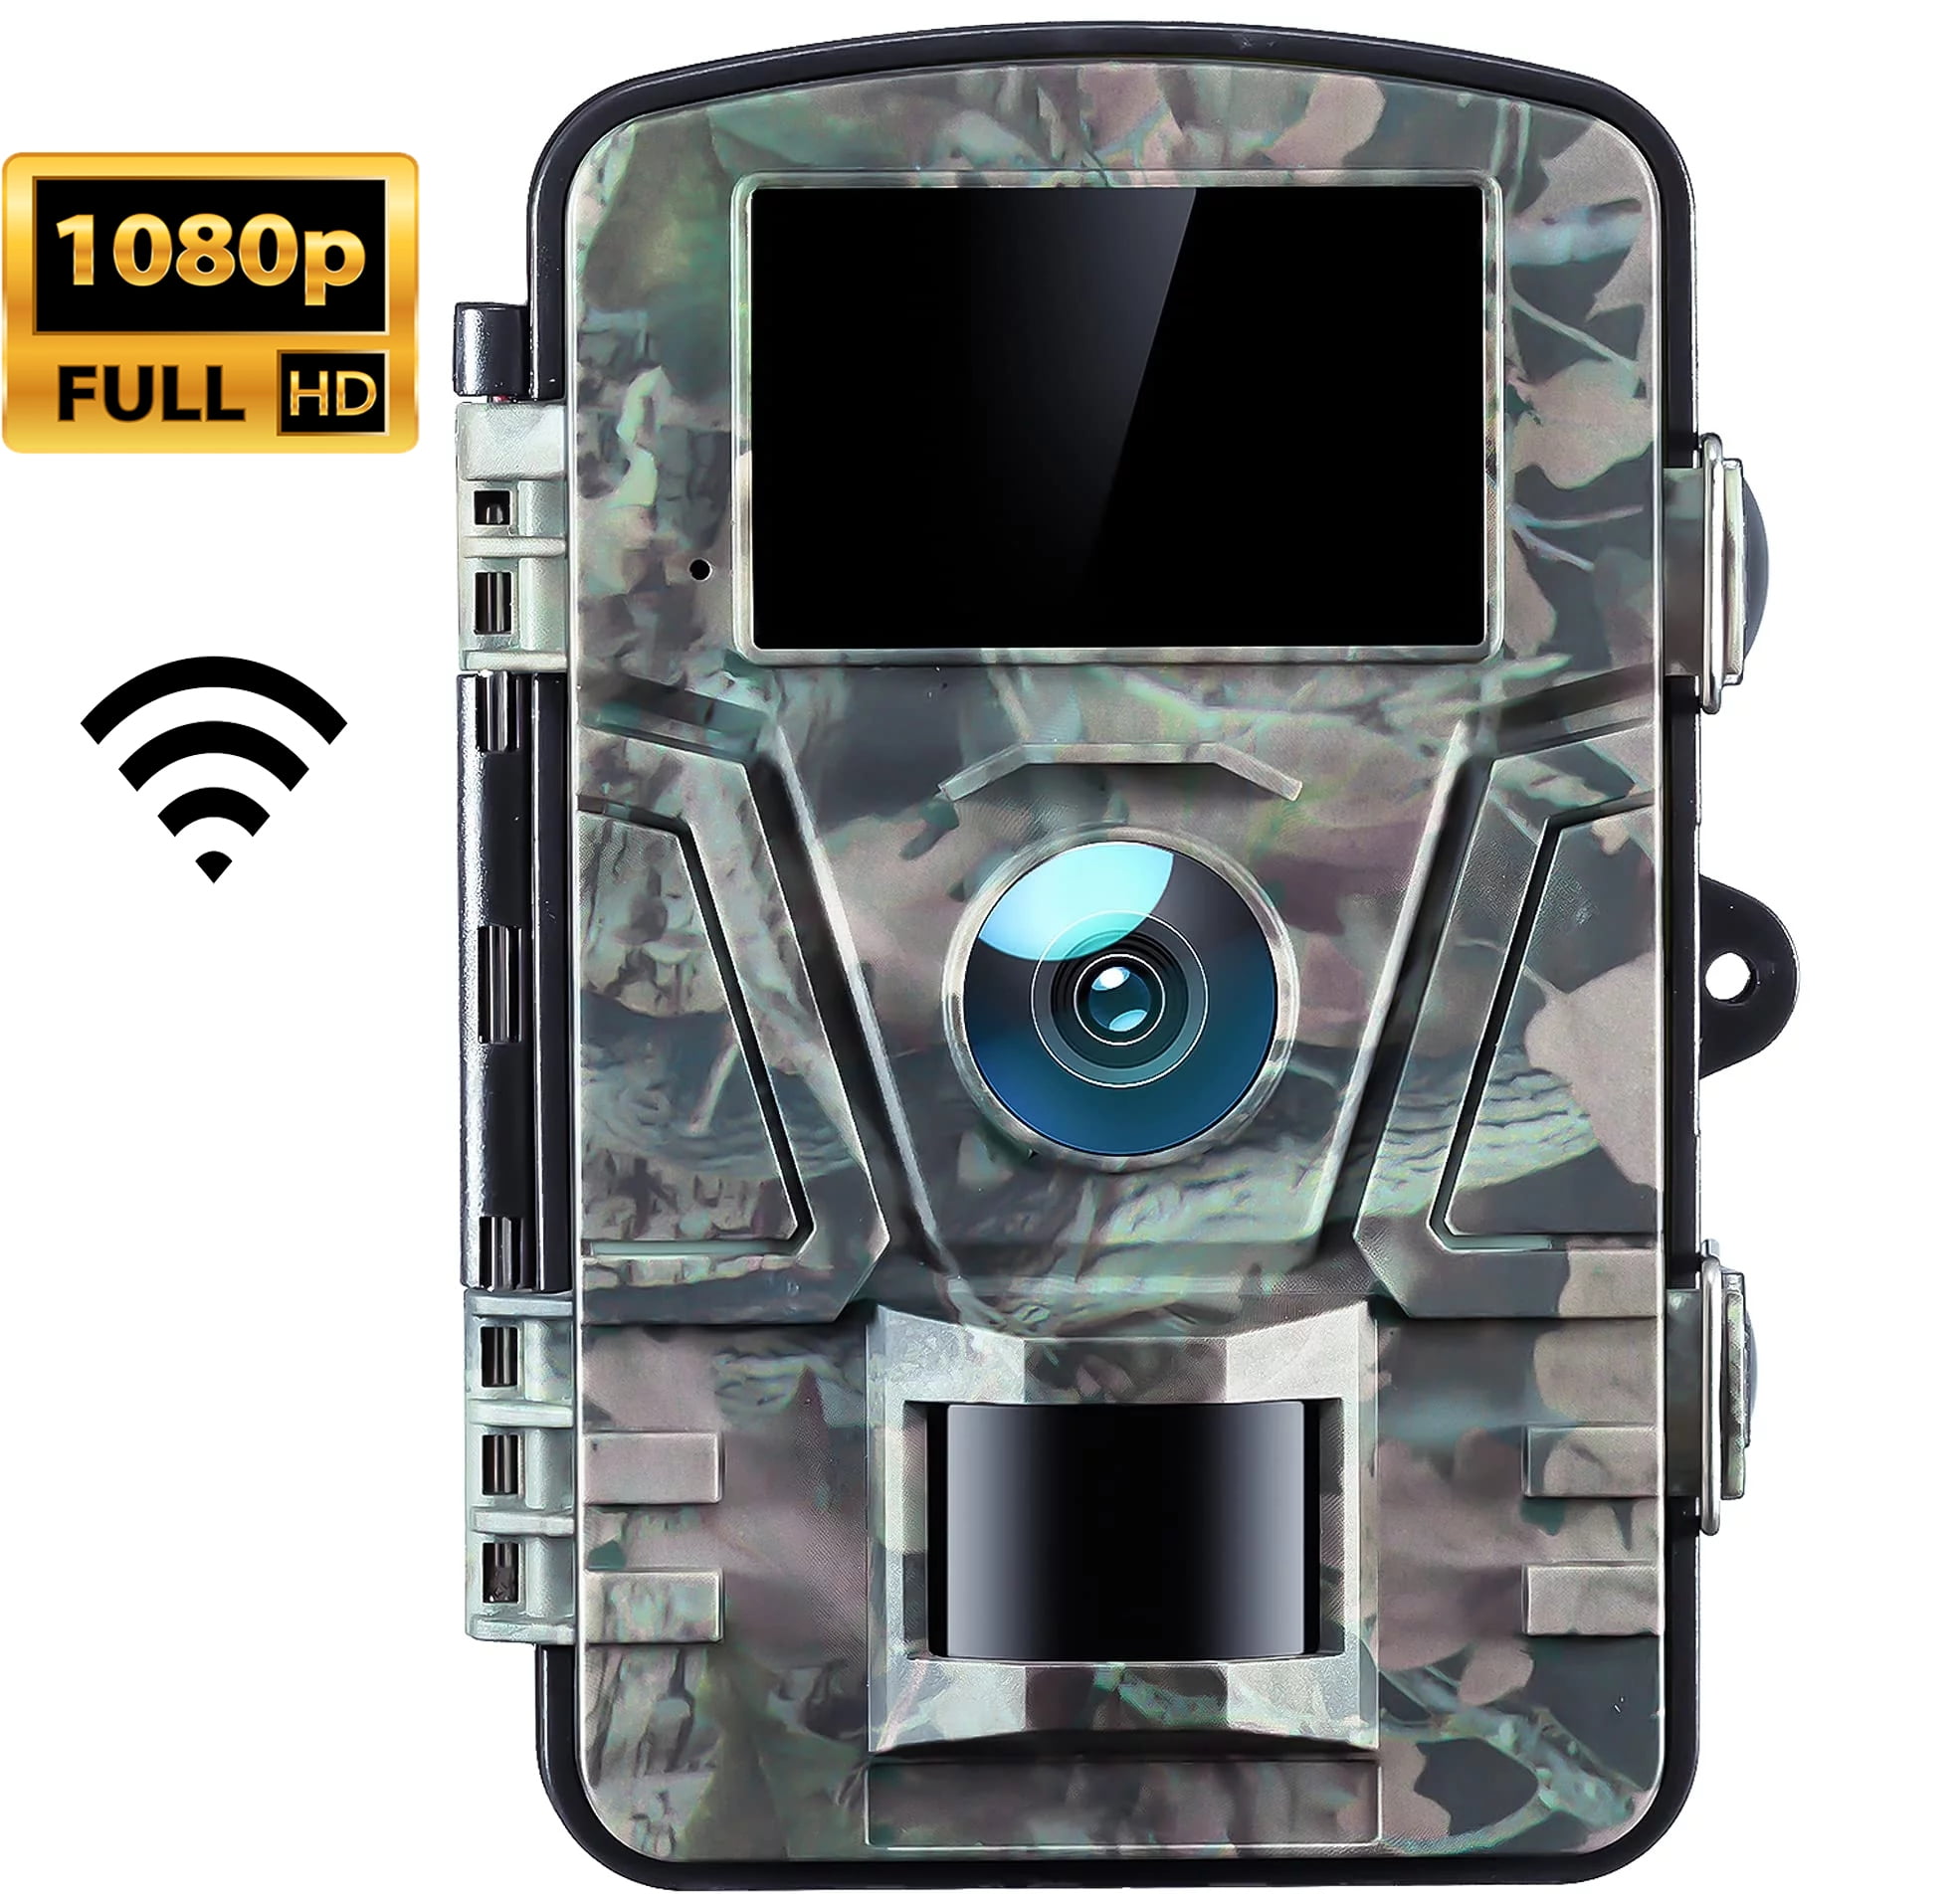 Caméra de surveillance 20MP ProHunt Verney-Carron